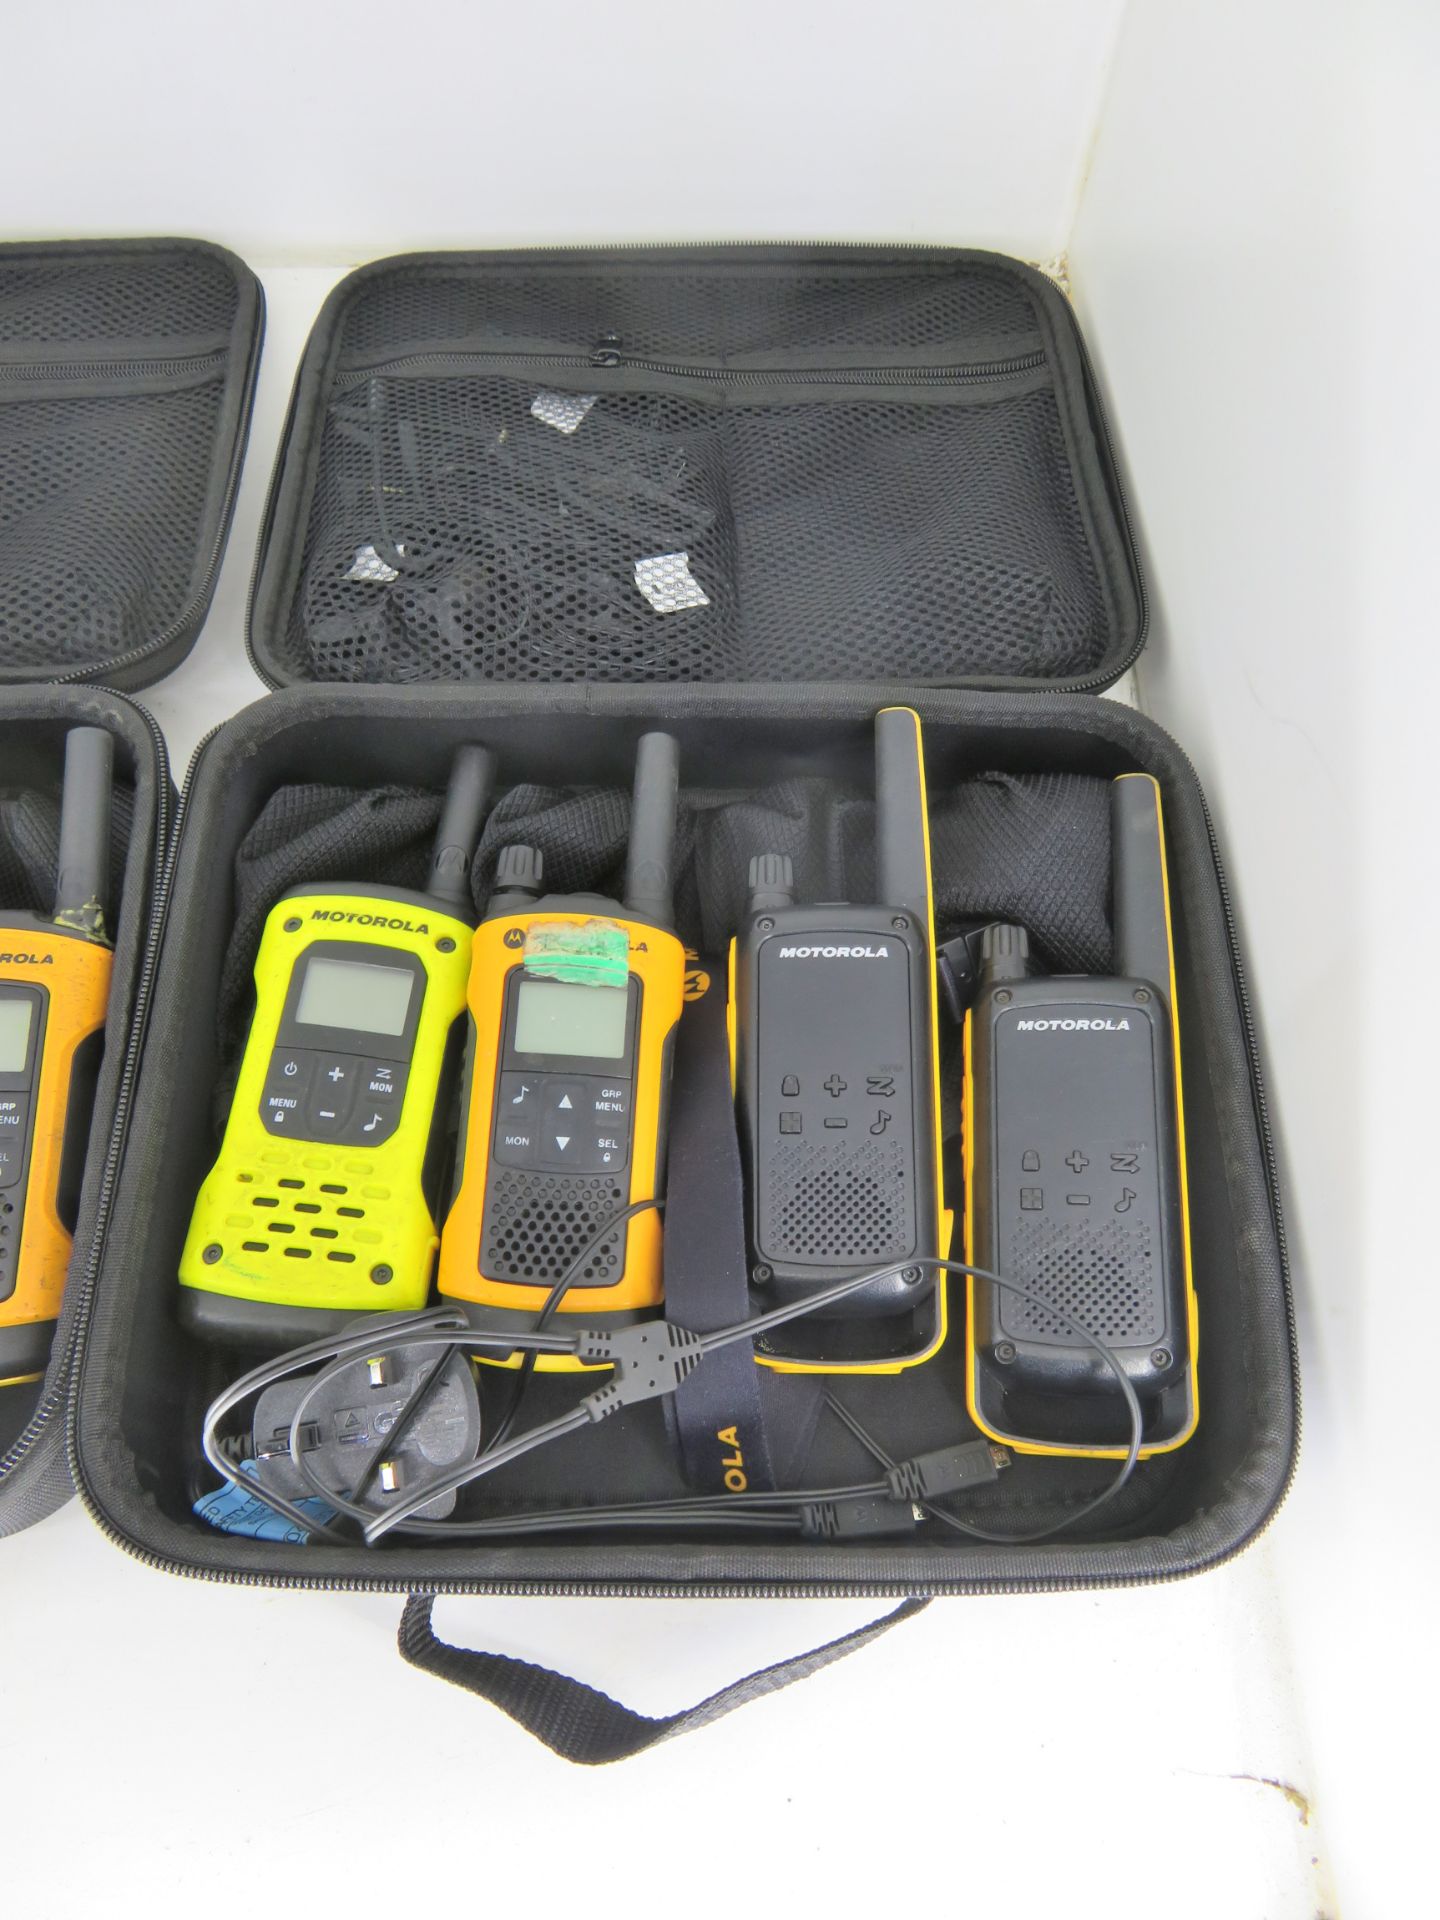 Motorola walkie talkies in case - AS SPARES OR REPAIRS - Image 2 of 4